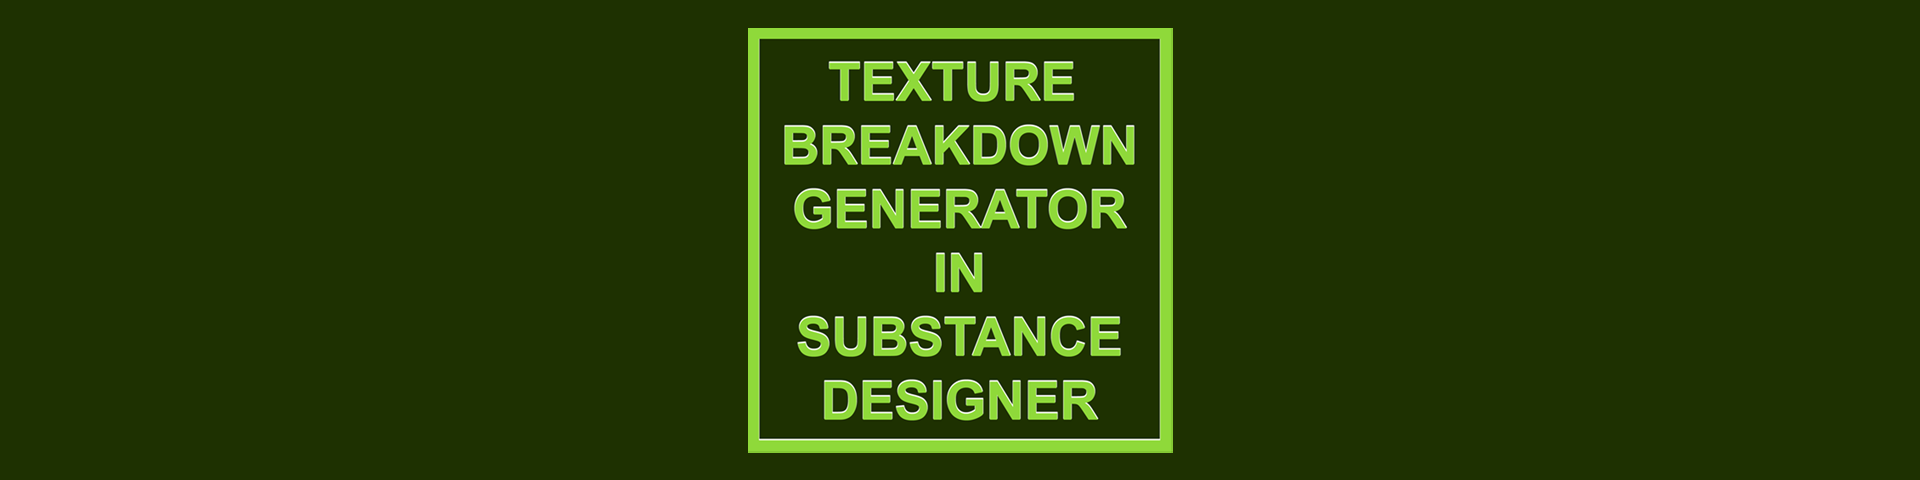 Texture Breakdown Exporter in Substance Designer